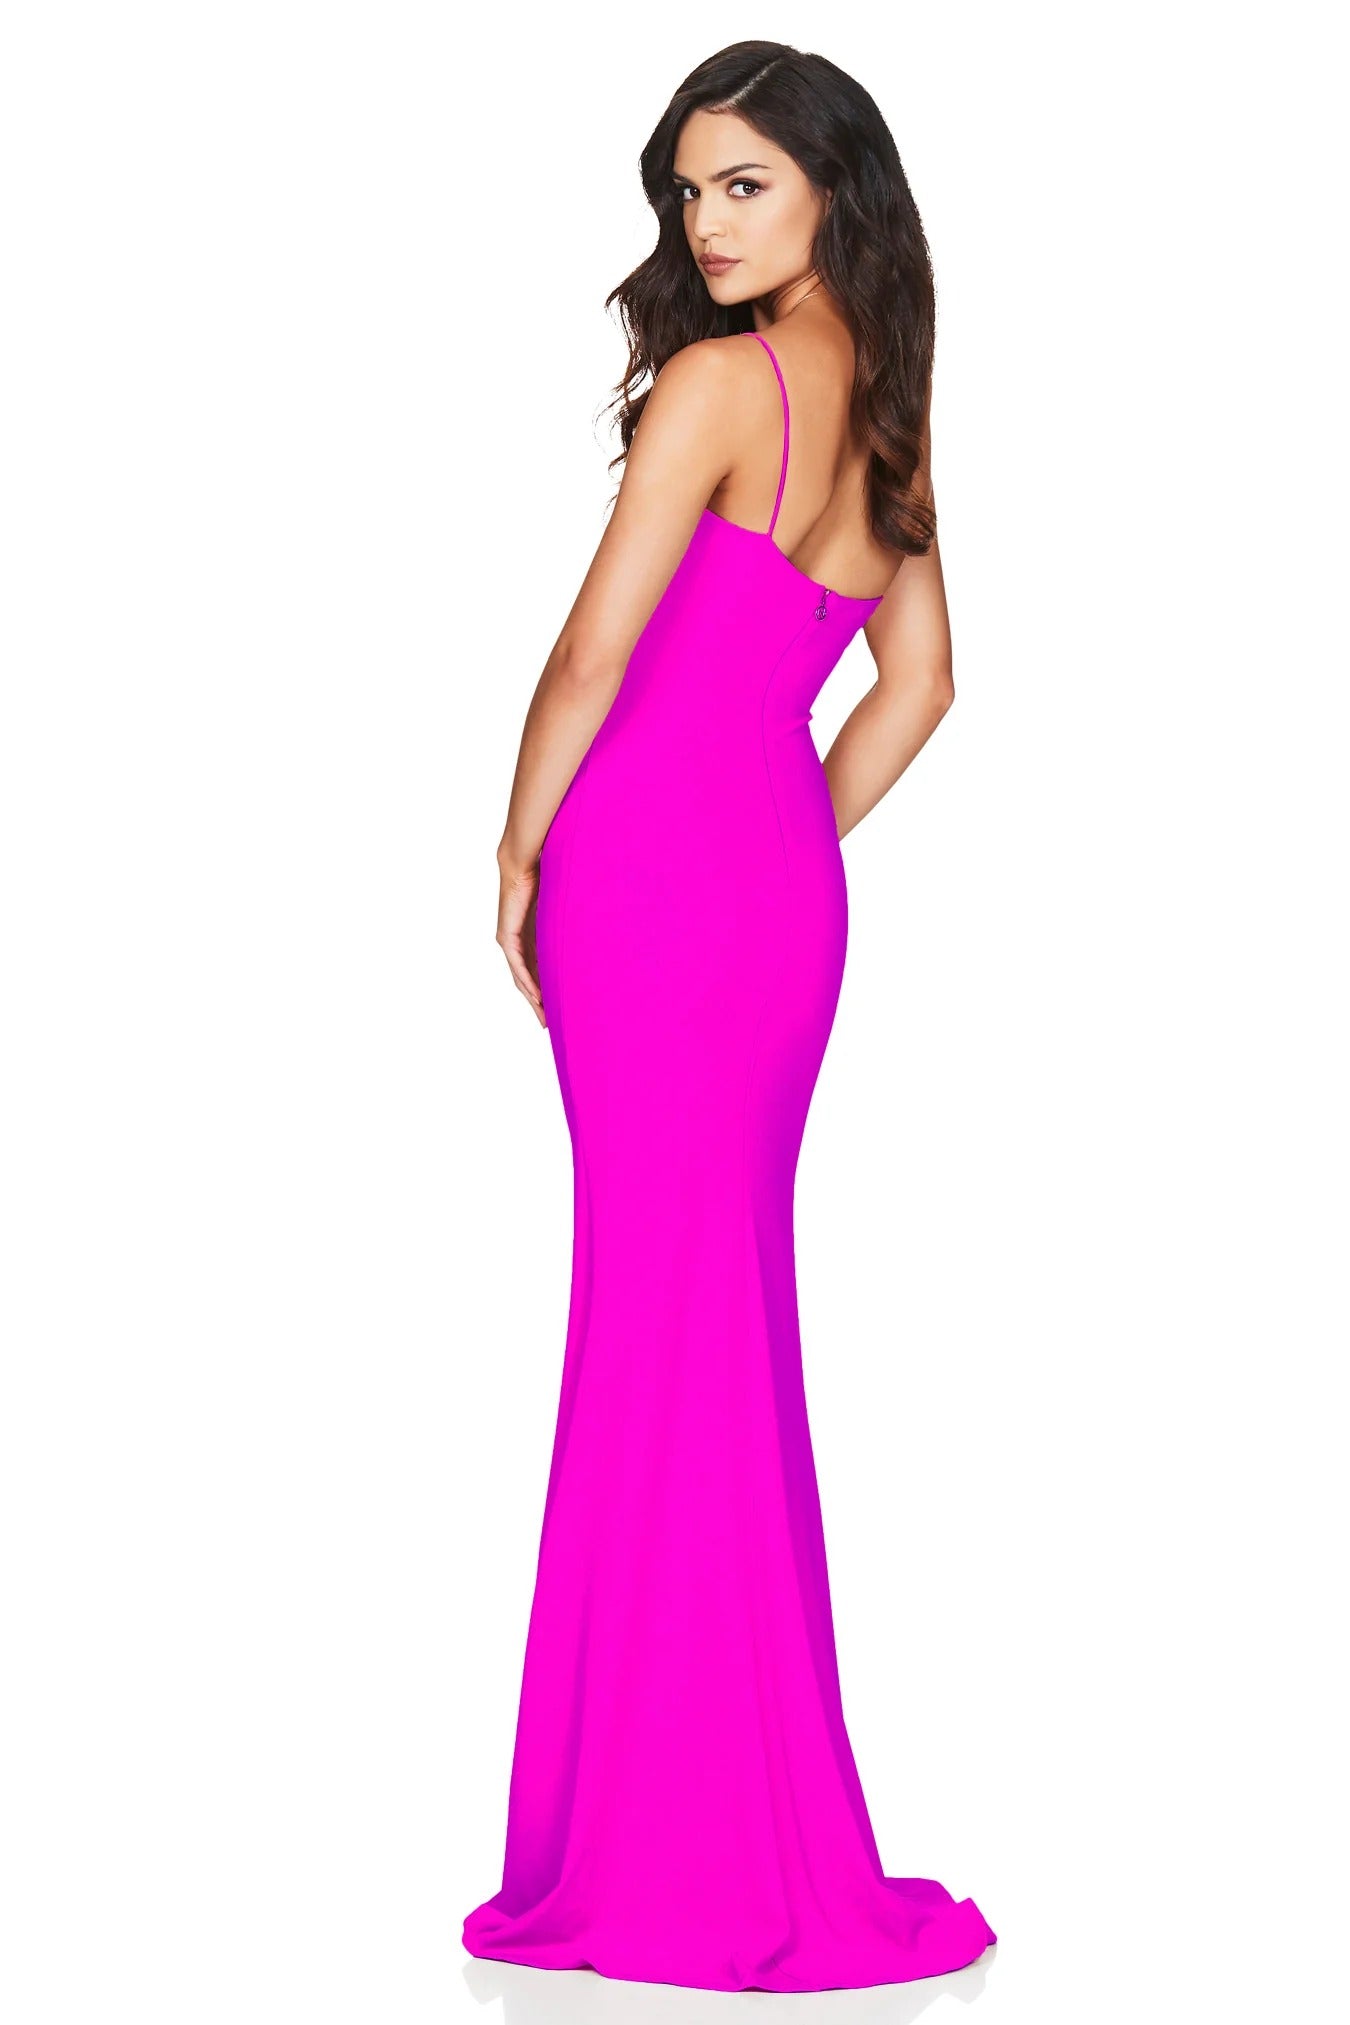 Nookie Jasmine One Shoulder Gown - Electric Pink - SHOPJAUS - JAUS